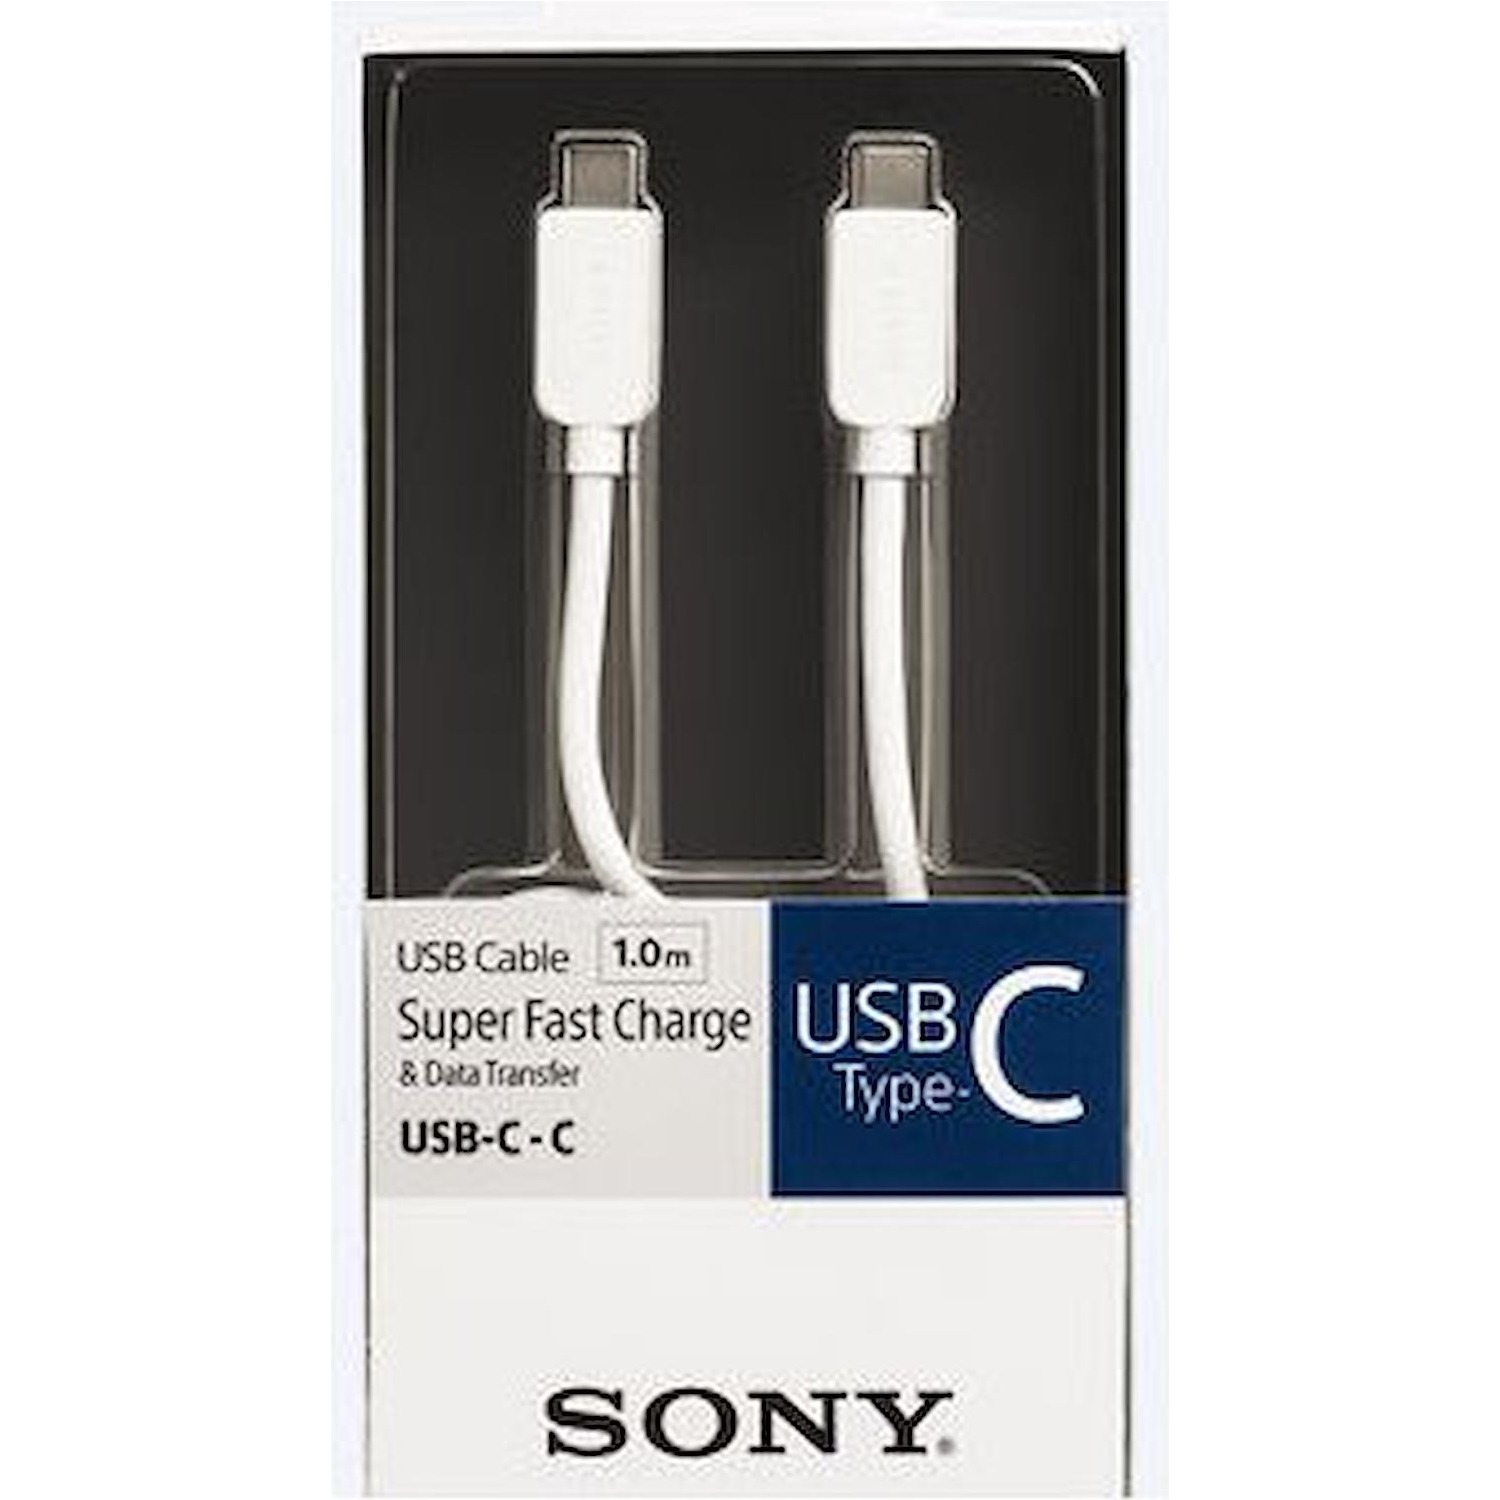 Immagine per Cavo Sony Type-C 100 cm bianco (C-C) USB C da DIMOStore